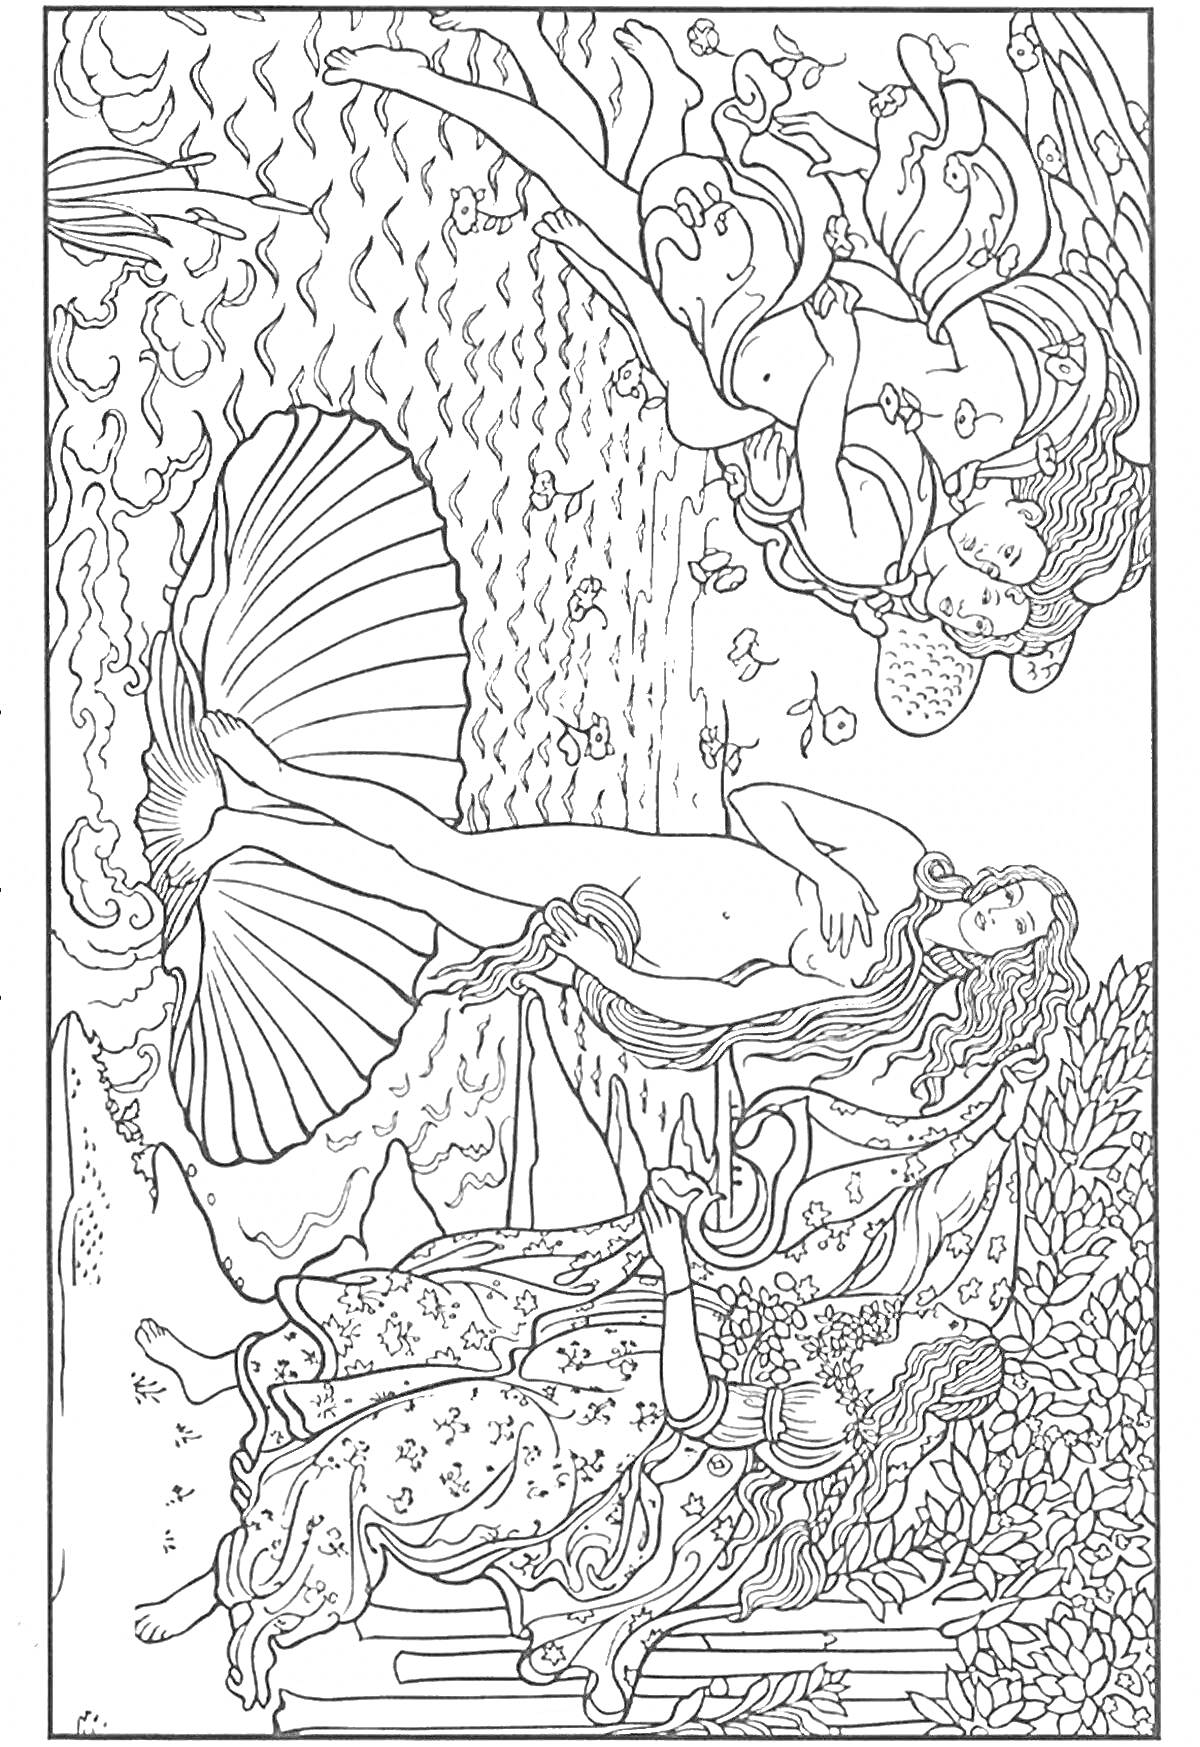 Раскраска Венера на раковине, два ангела над головой, женщина на берегу с тканью, волны, цветы, дерево